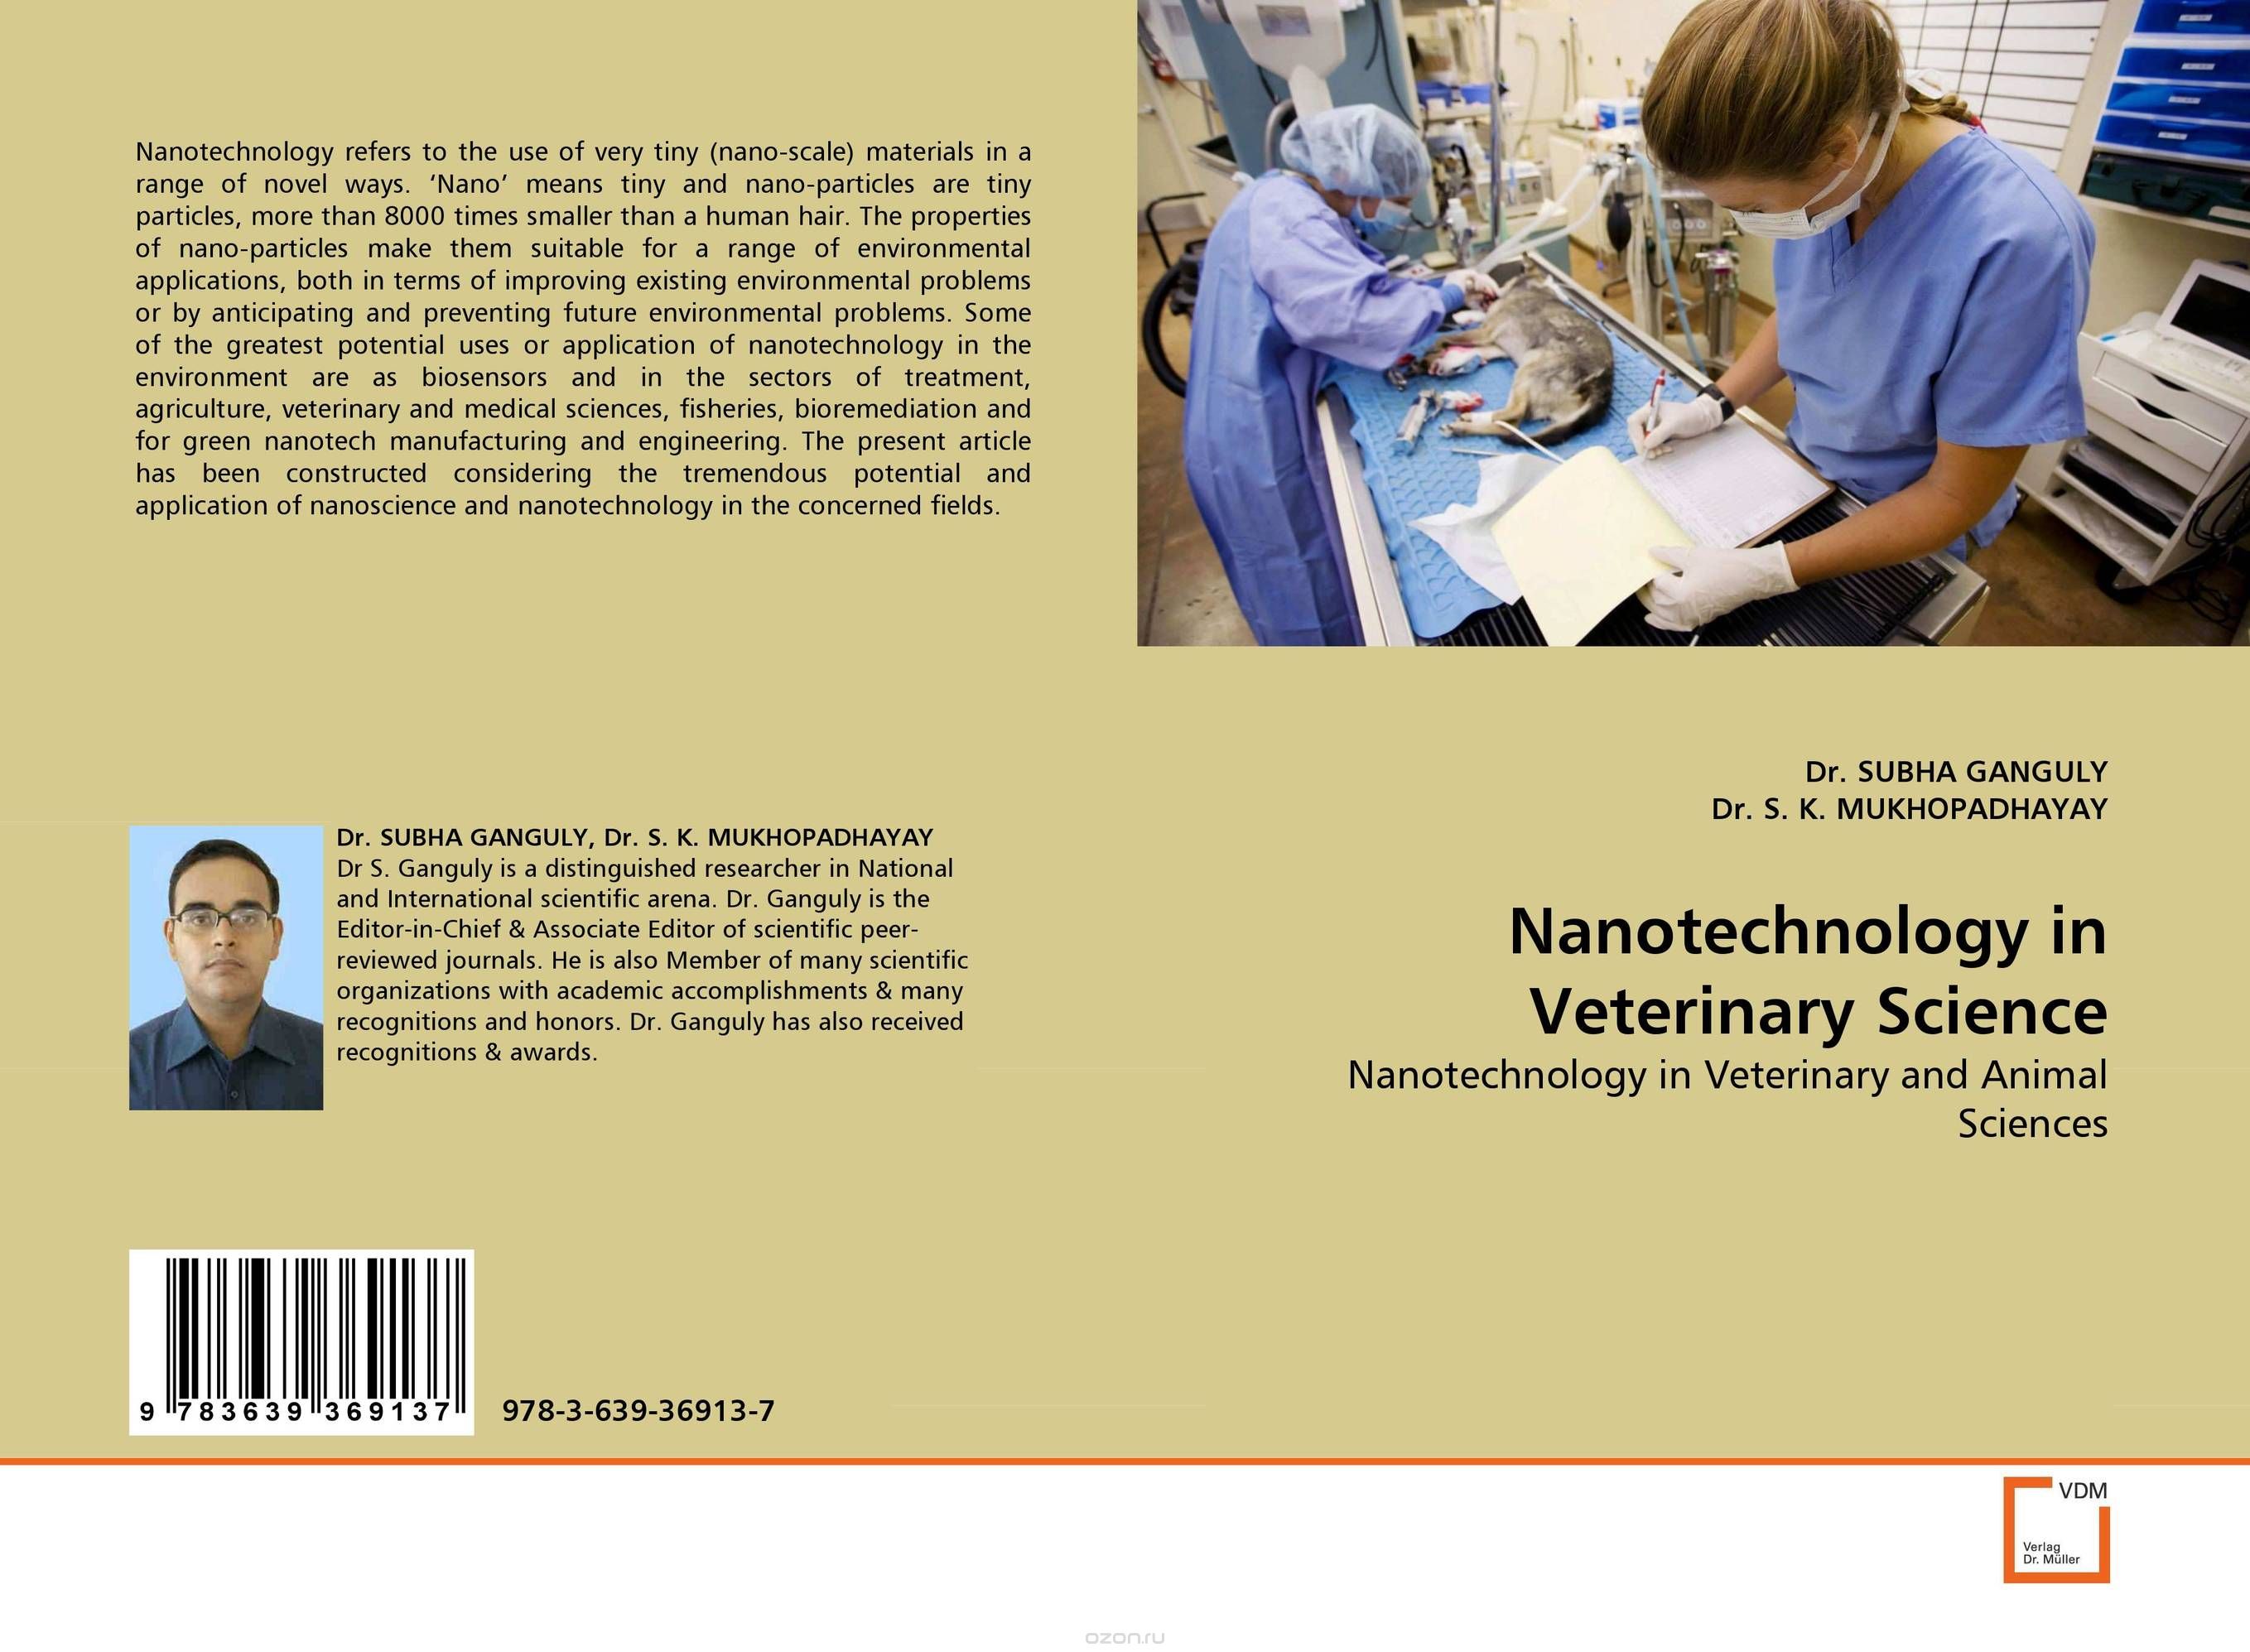 Скачать книгу "Nanotechnology in Veterinary Science"